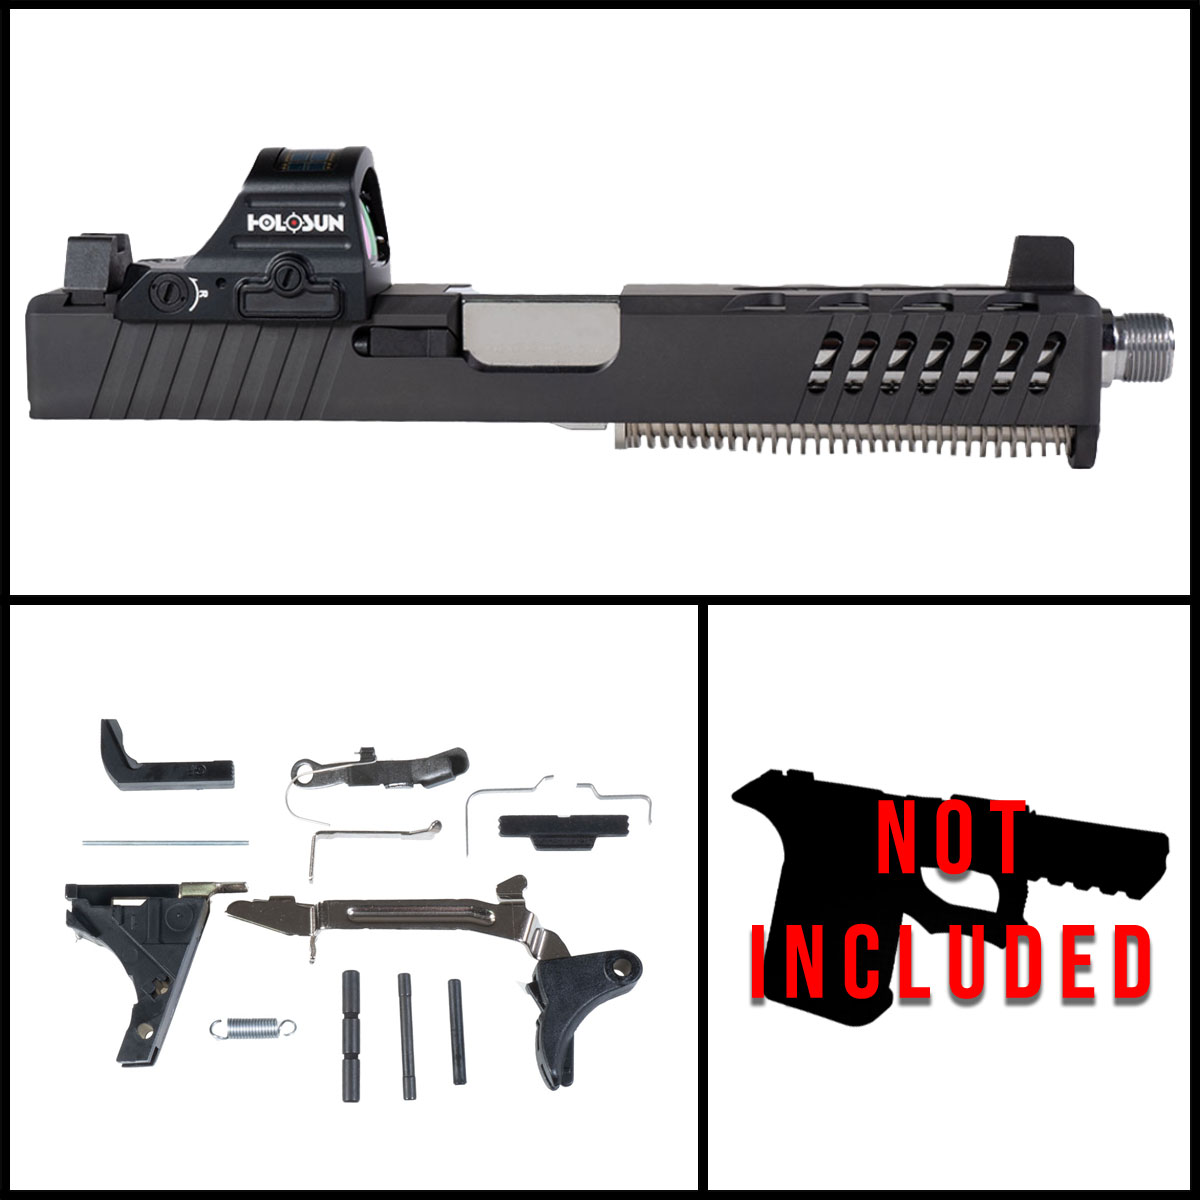 DTT 'Warden w/Red Dot' 9mm Full Pistol Build Kit (Everything Minus Frame) - Glock 17 Gen 1-3 Compatible